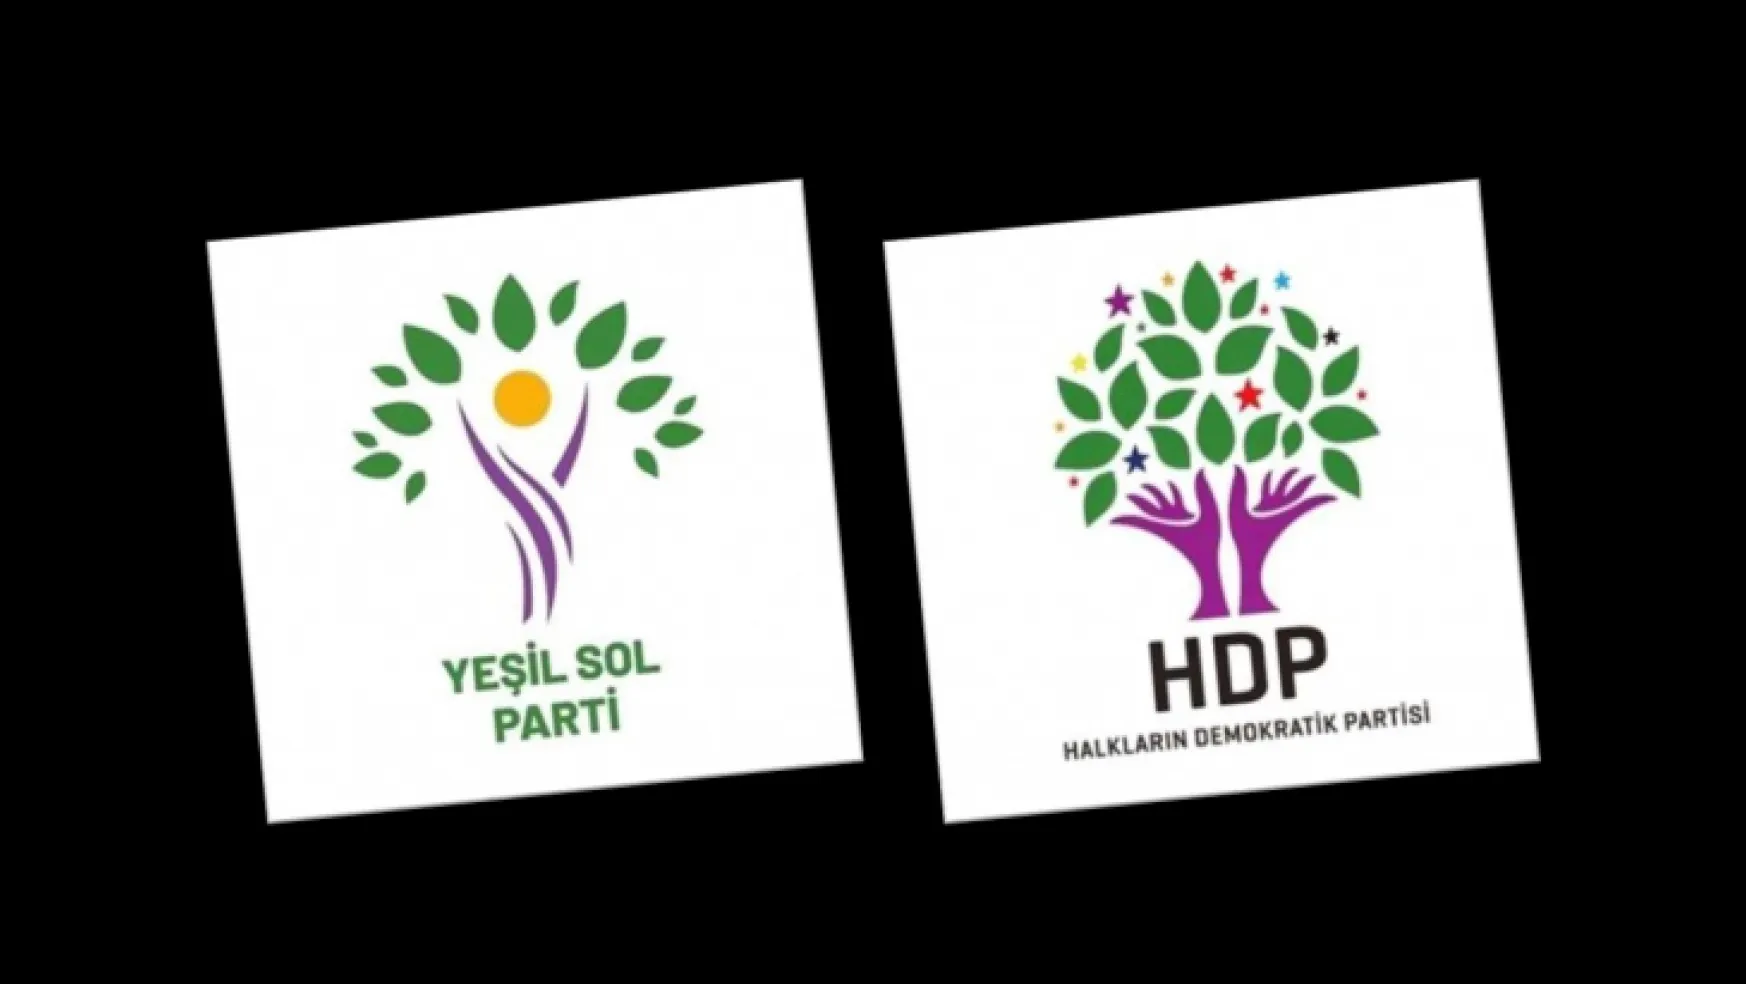 HDP'nin Stepnesi Yeşil Yol Partisi Kongresini Yaptı